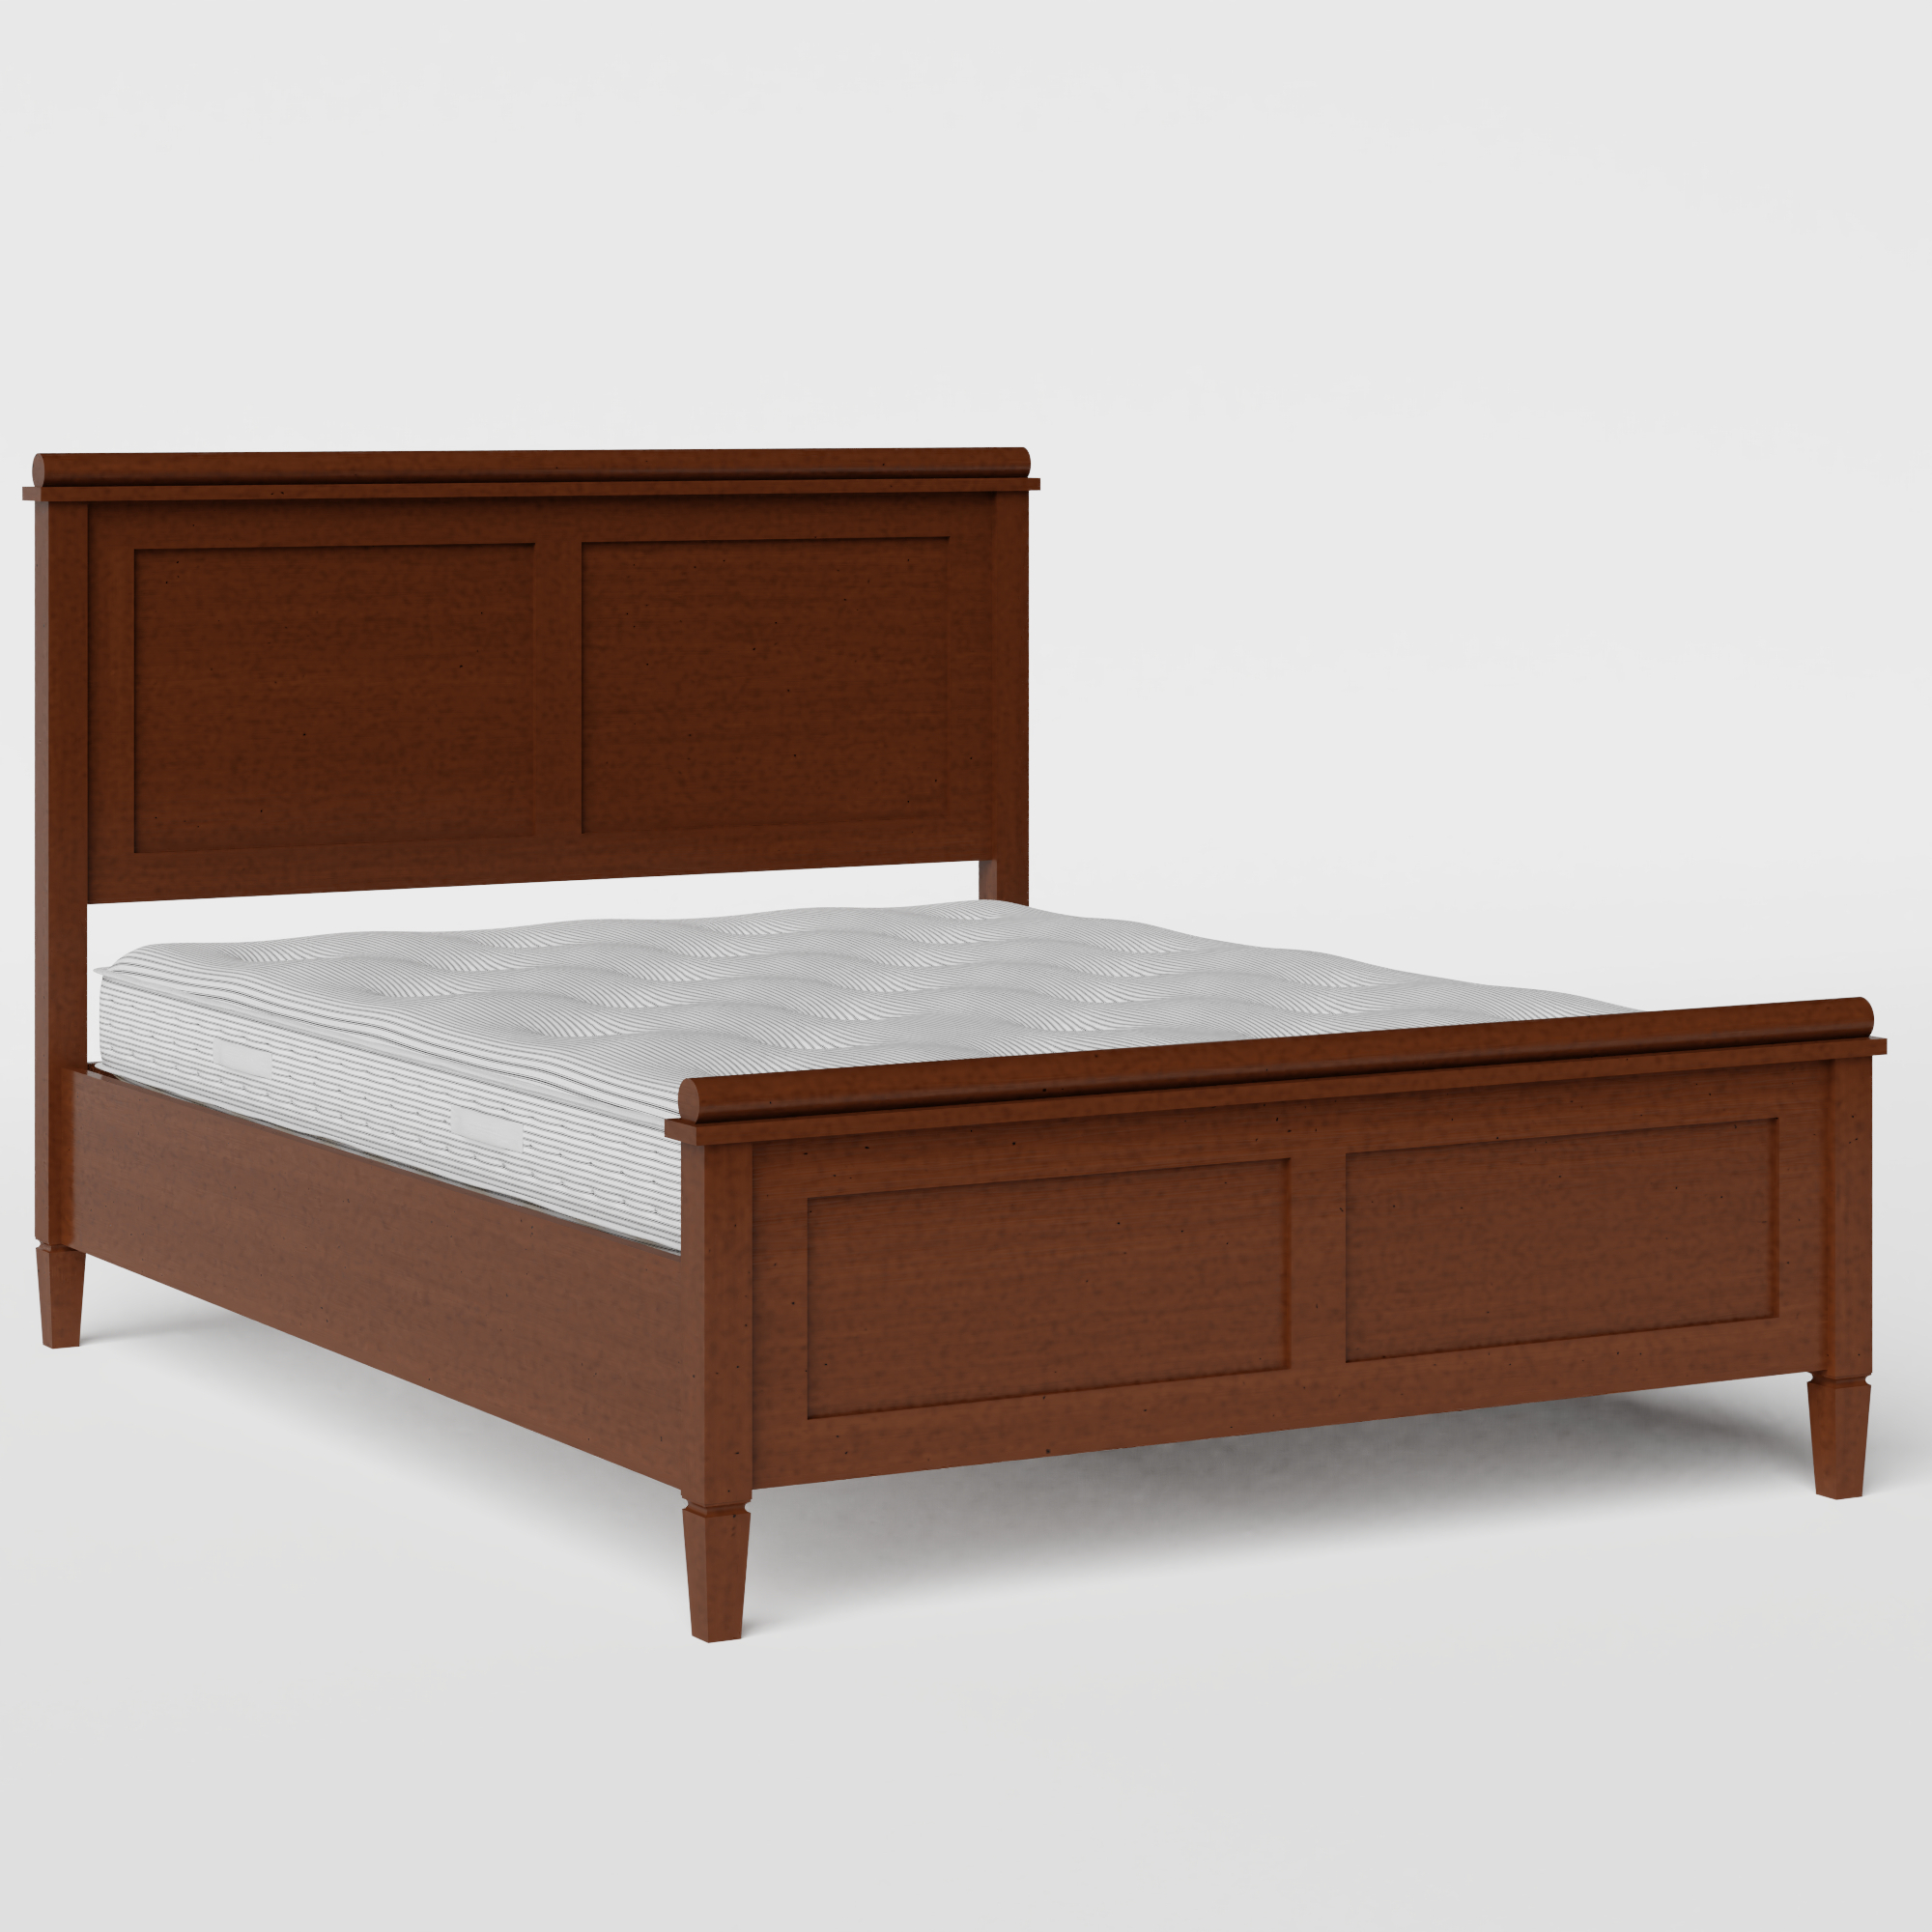 Nocturne wood bed in dark cherry with Juno mattress